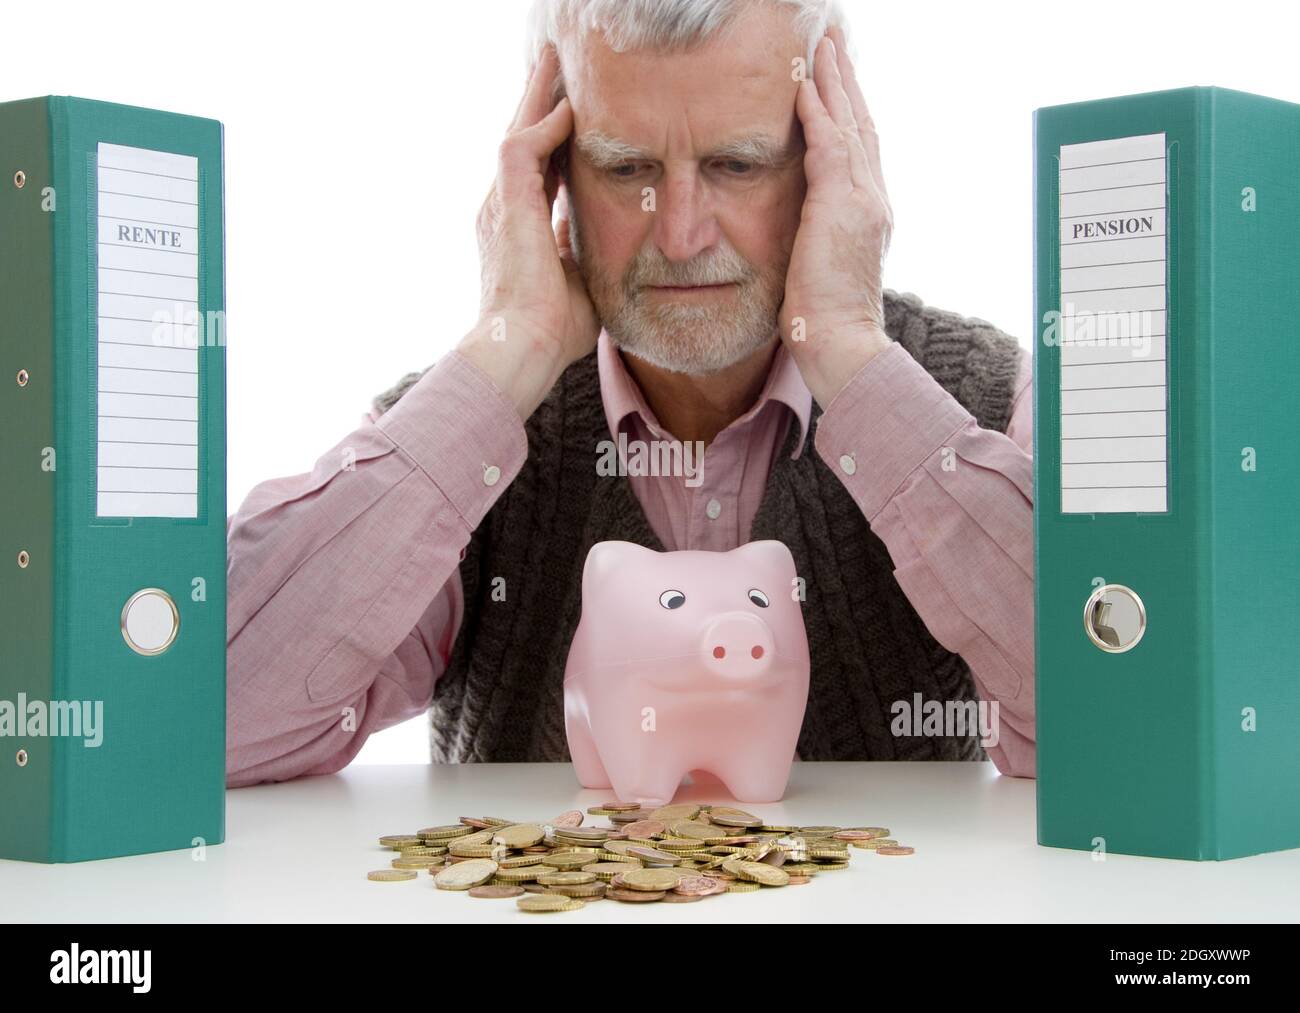 Rentner mit Geldsorgen, sitzt Sparschwein vor und verzweifelt, signor: Sì Foto Stock